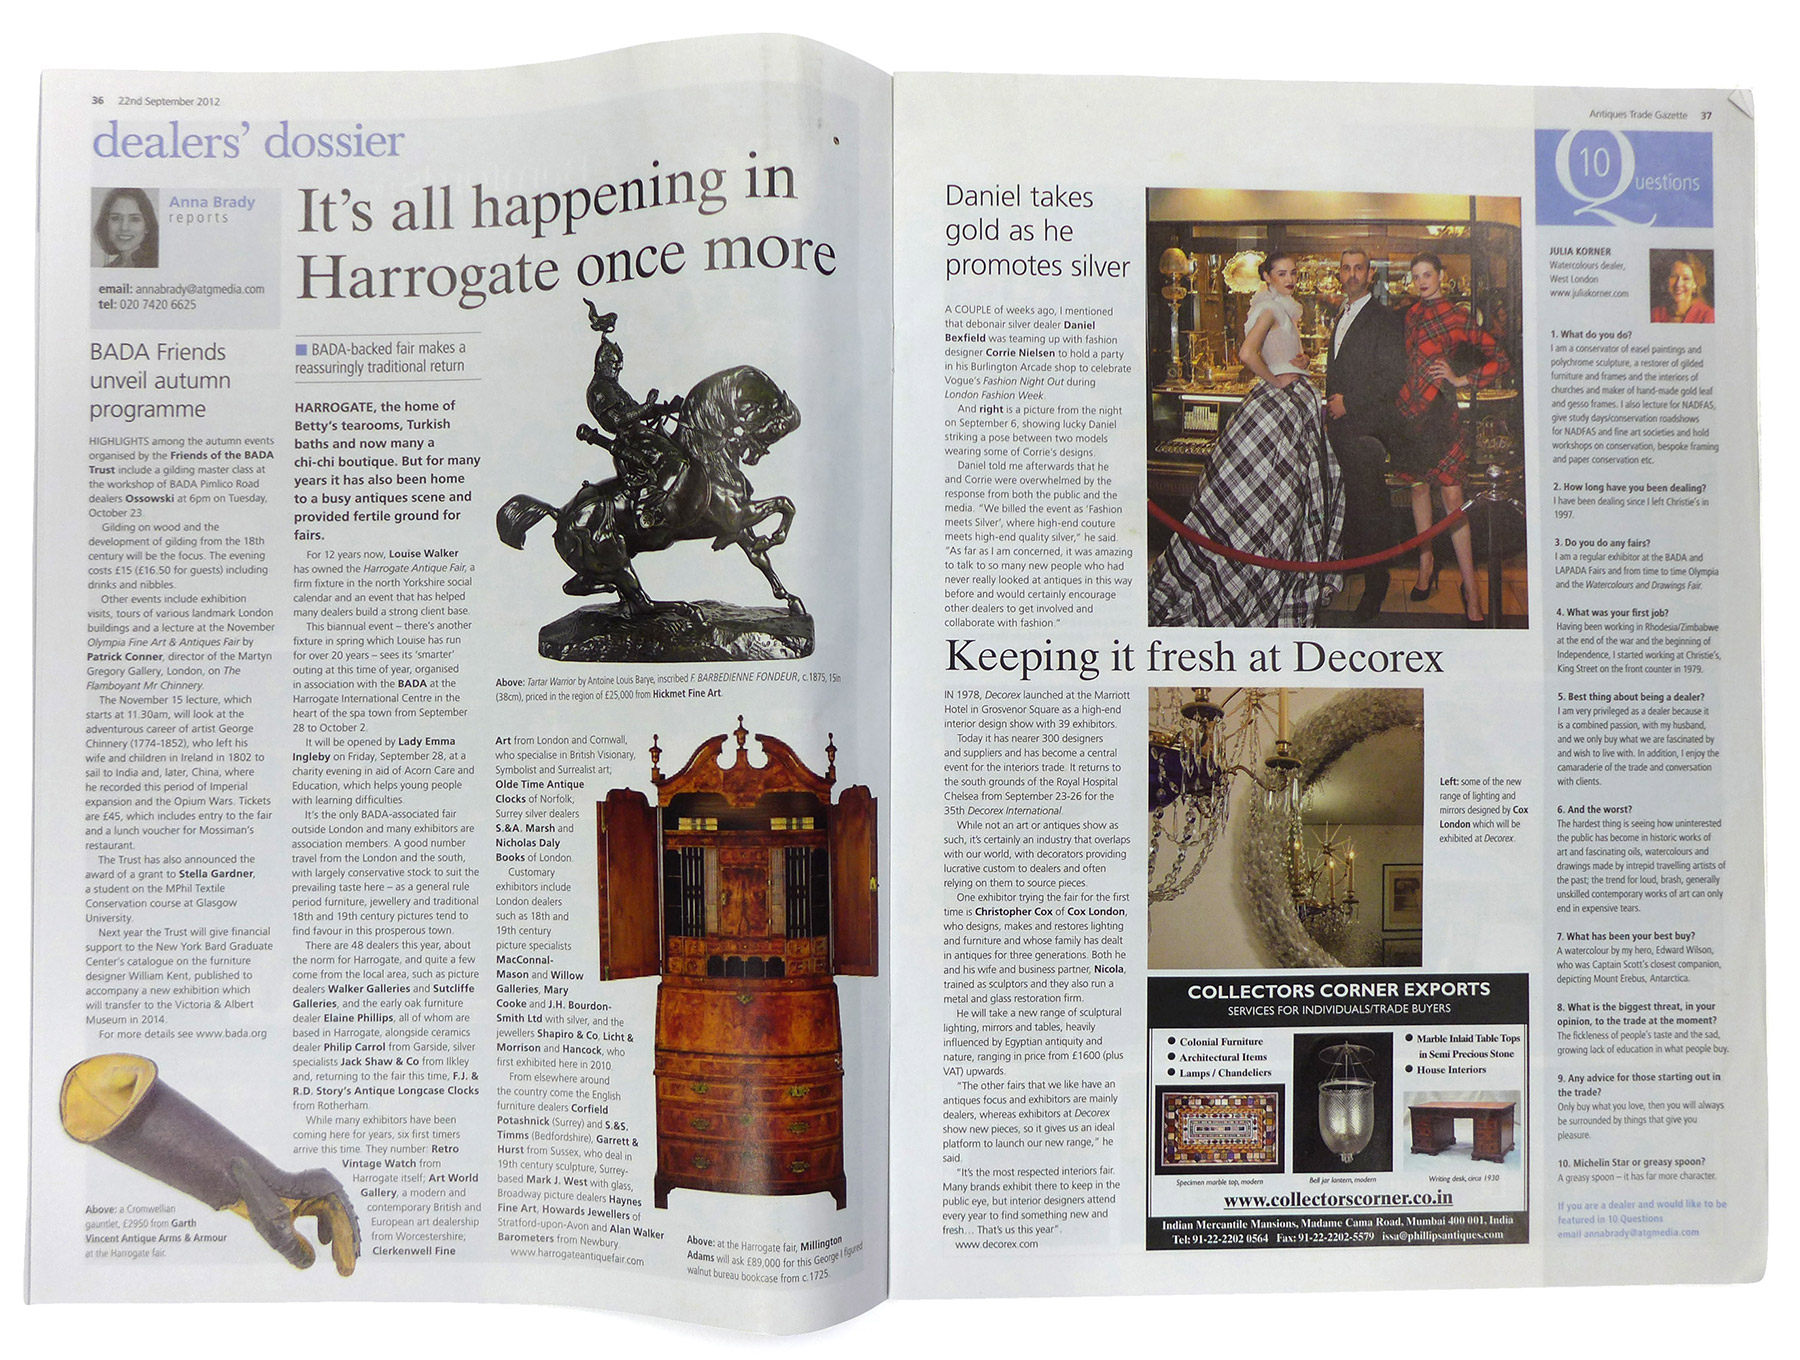 Antiques-Trade-Gazette2-spread-cox-london